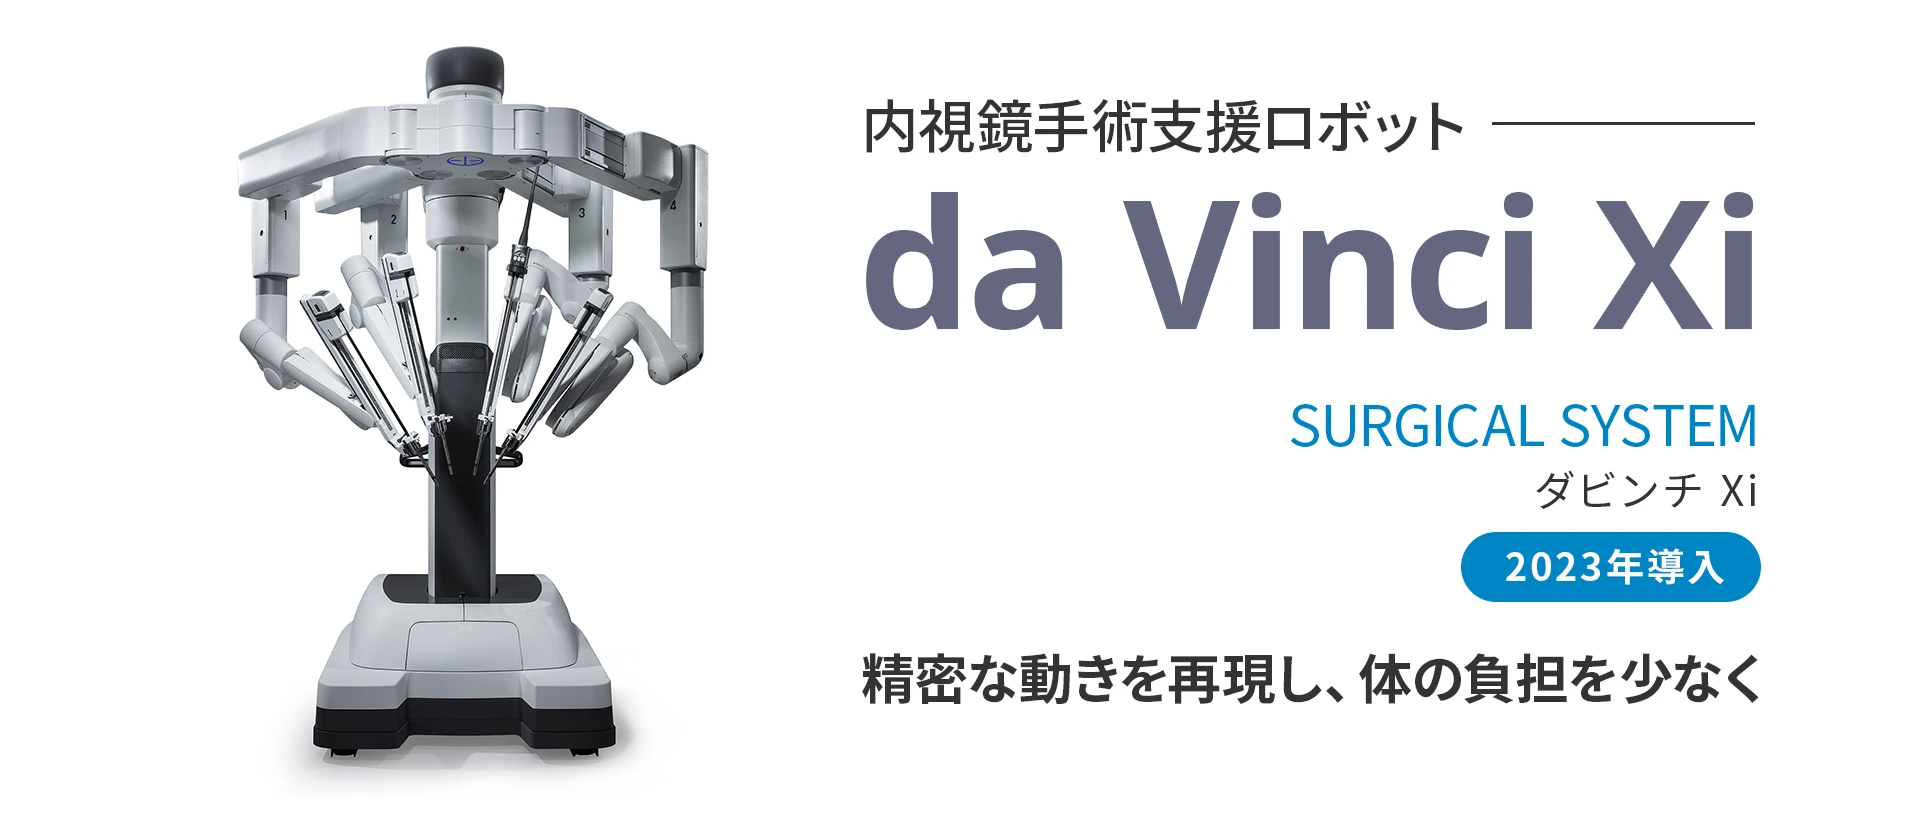 内視鏡手術支援ロボットダビンチXiを2023年に導入しました